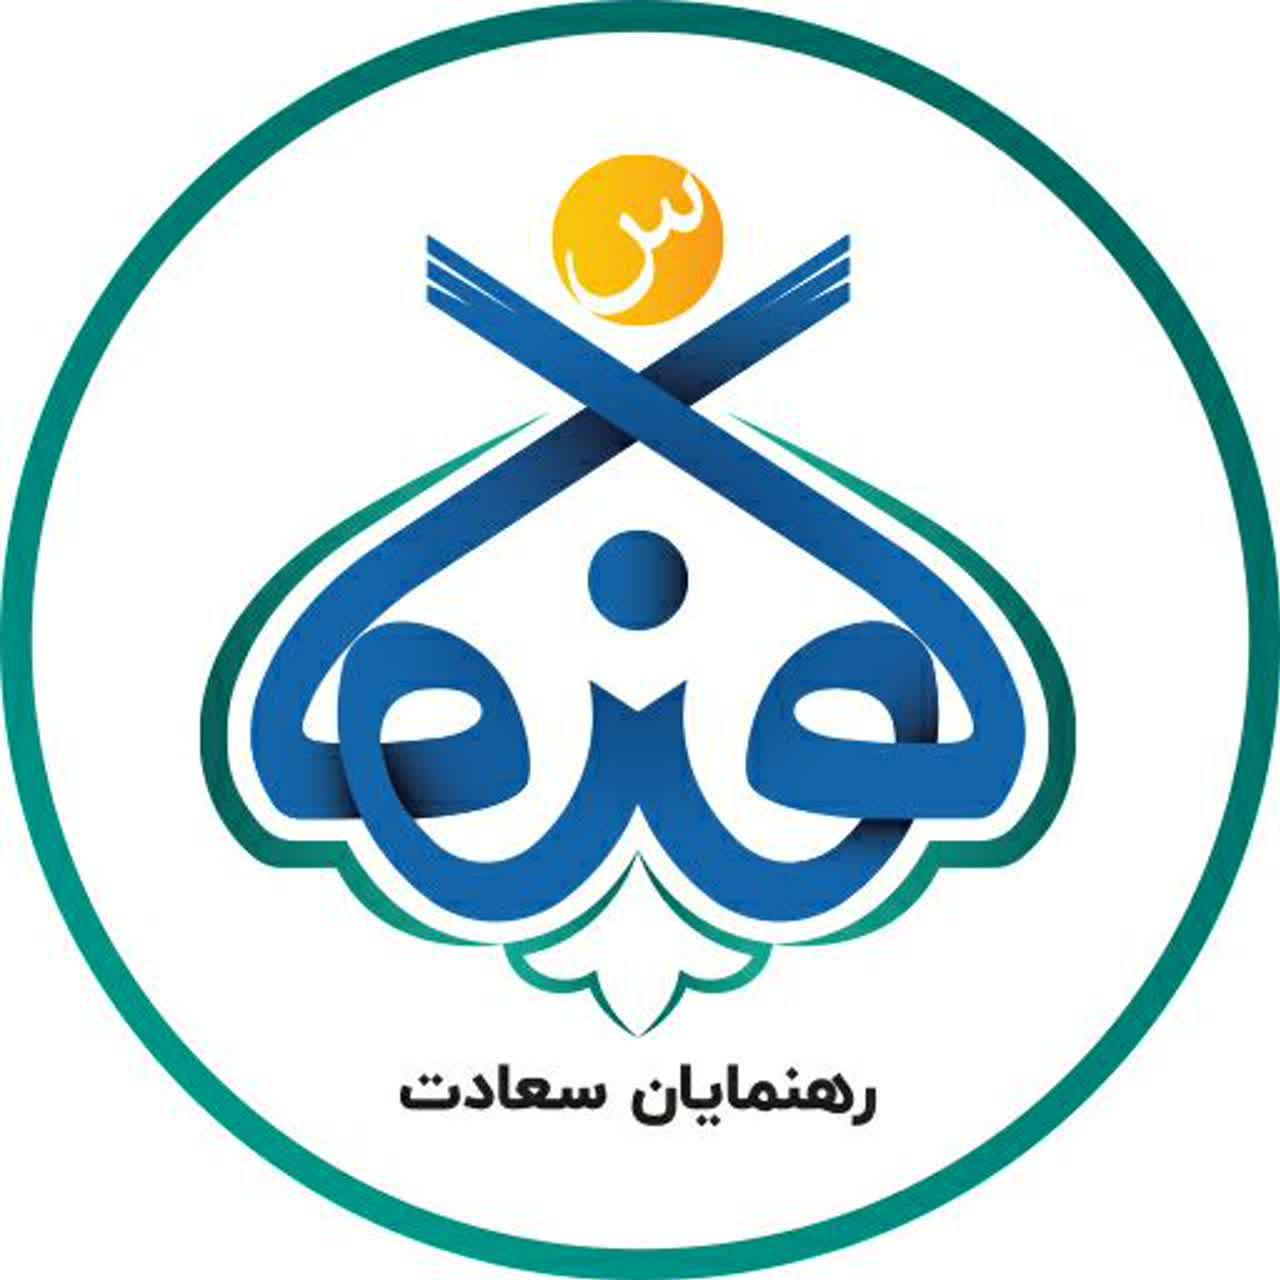 موسسه روانشناختی اسلامی رهنمایان سعادت